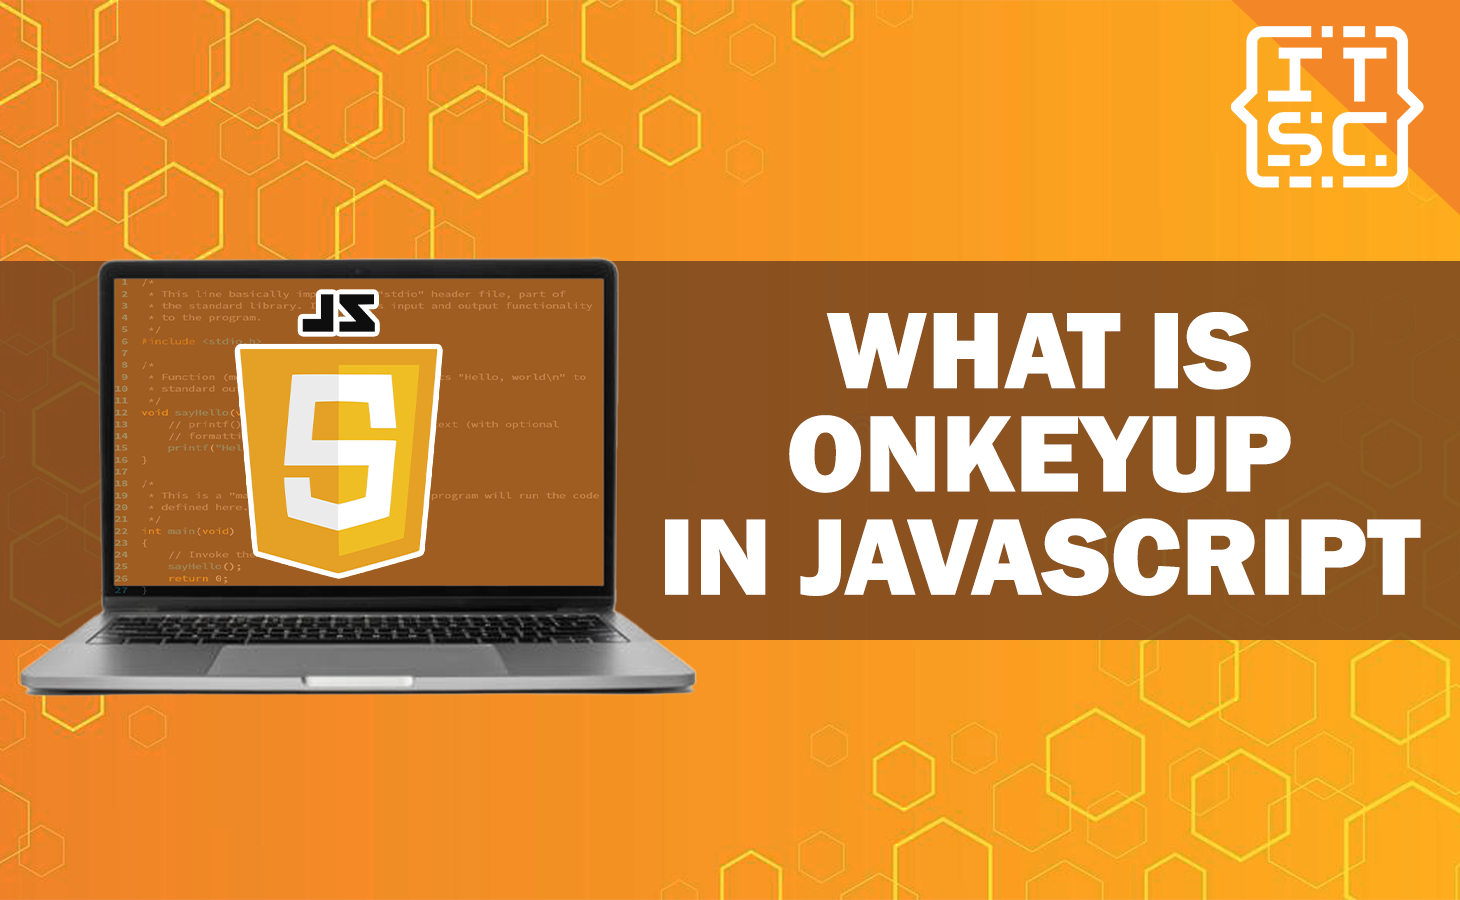 What is onkeyup in JavaScript